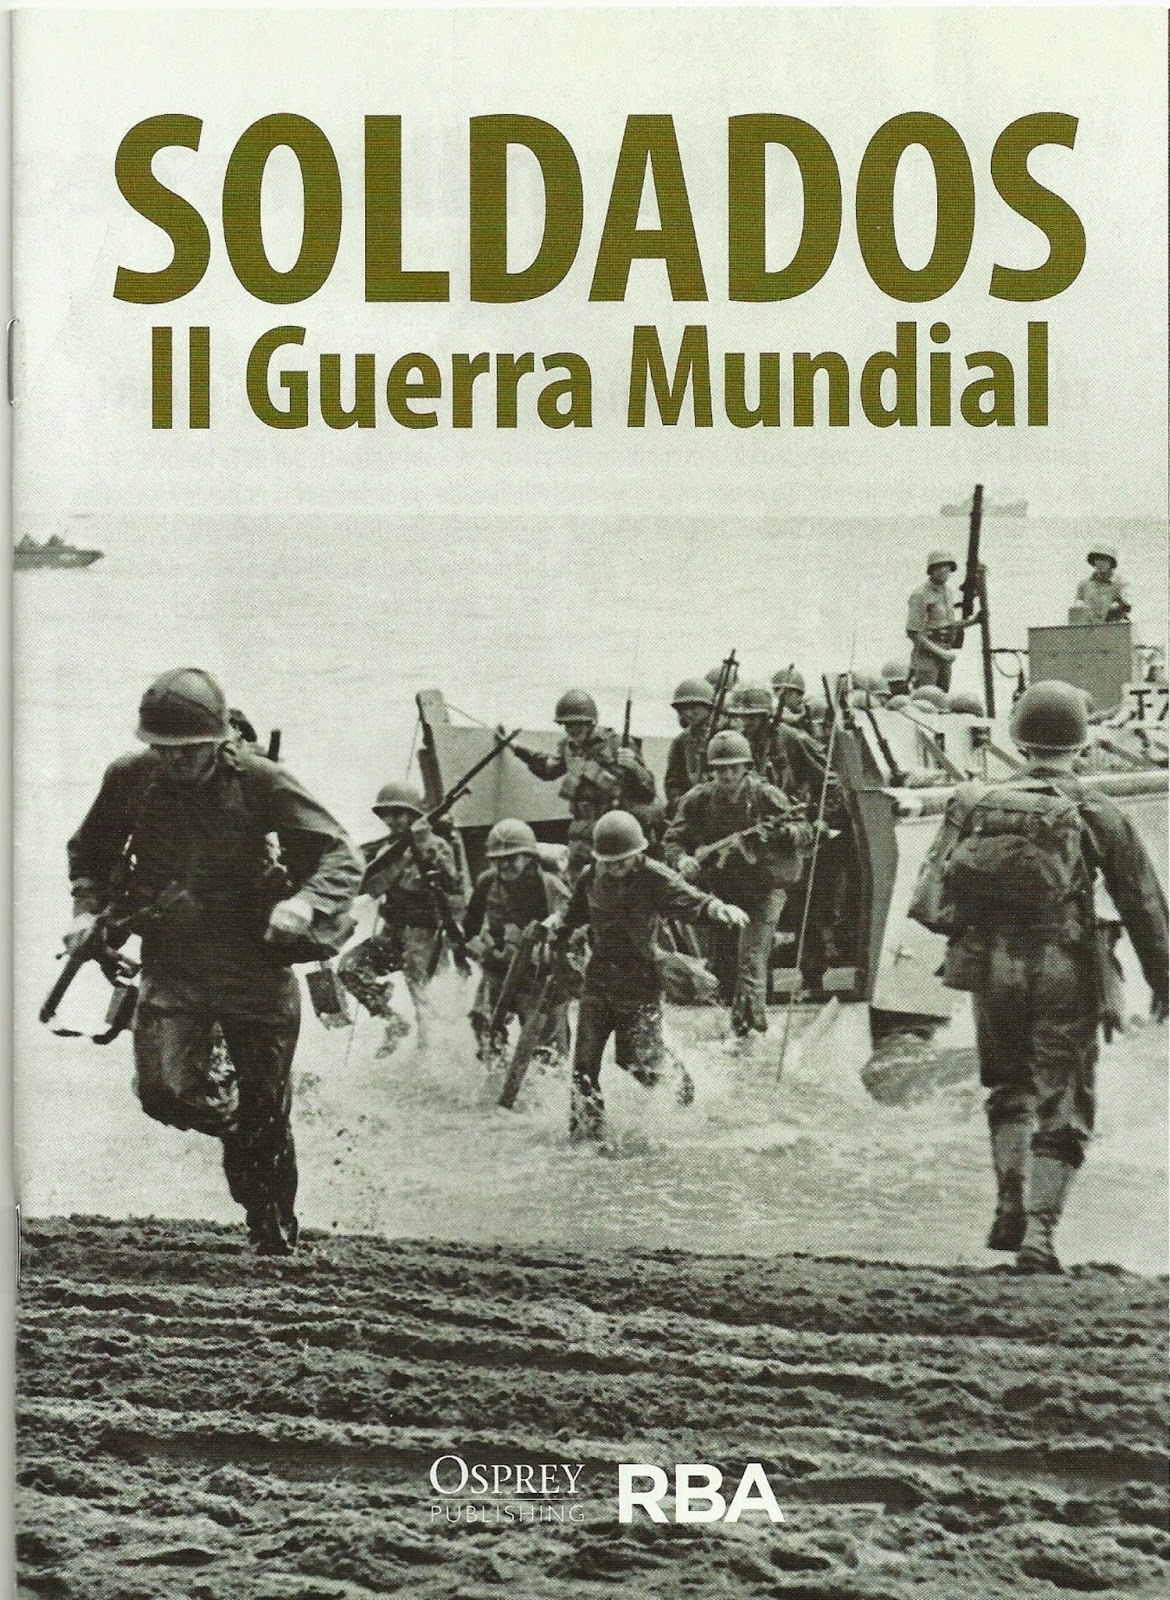 Libros, Revistas, Intereses : Soldados de la Segunda Guerra Mundial